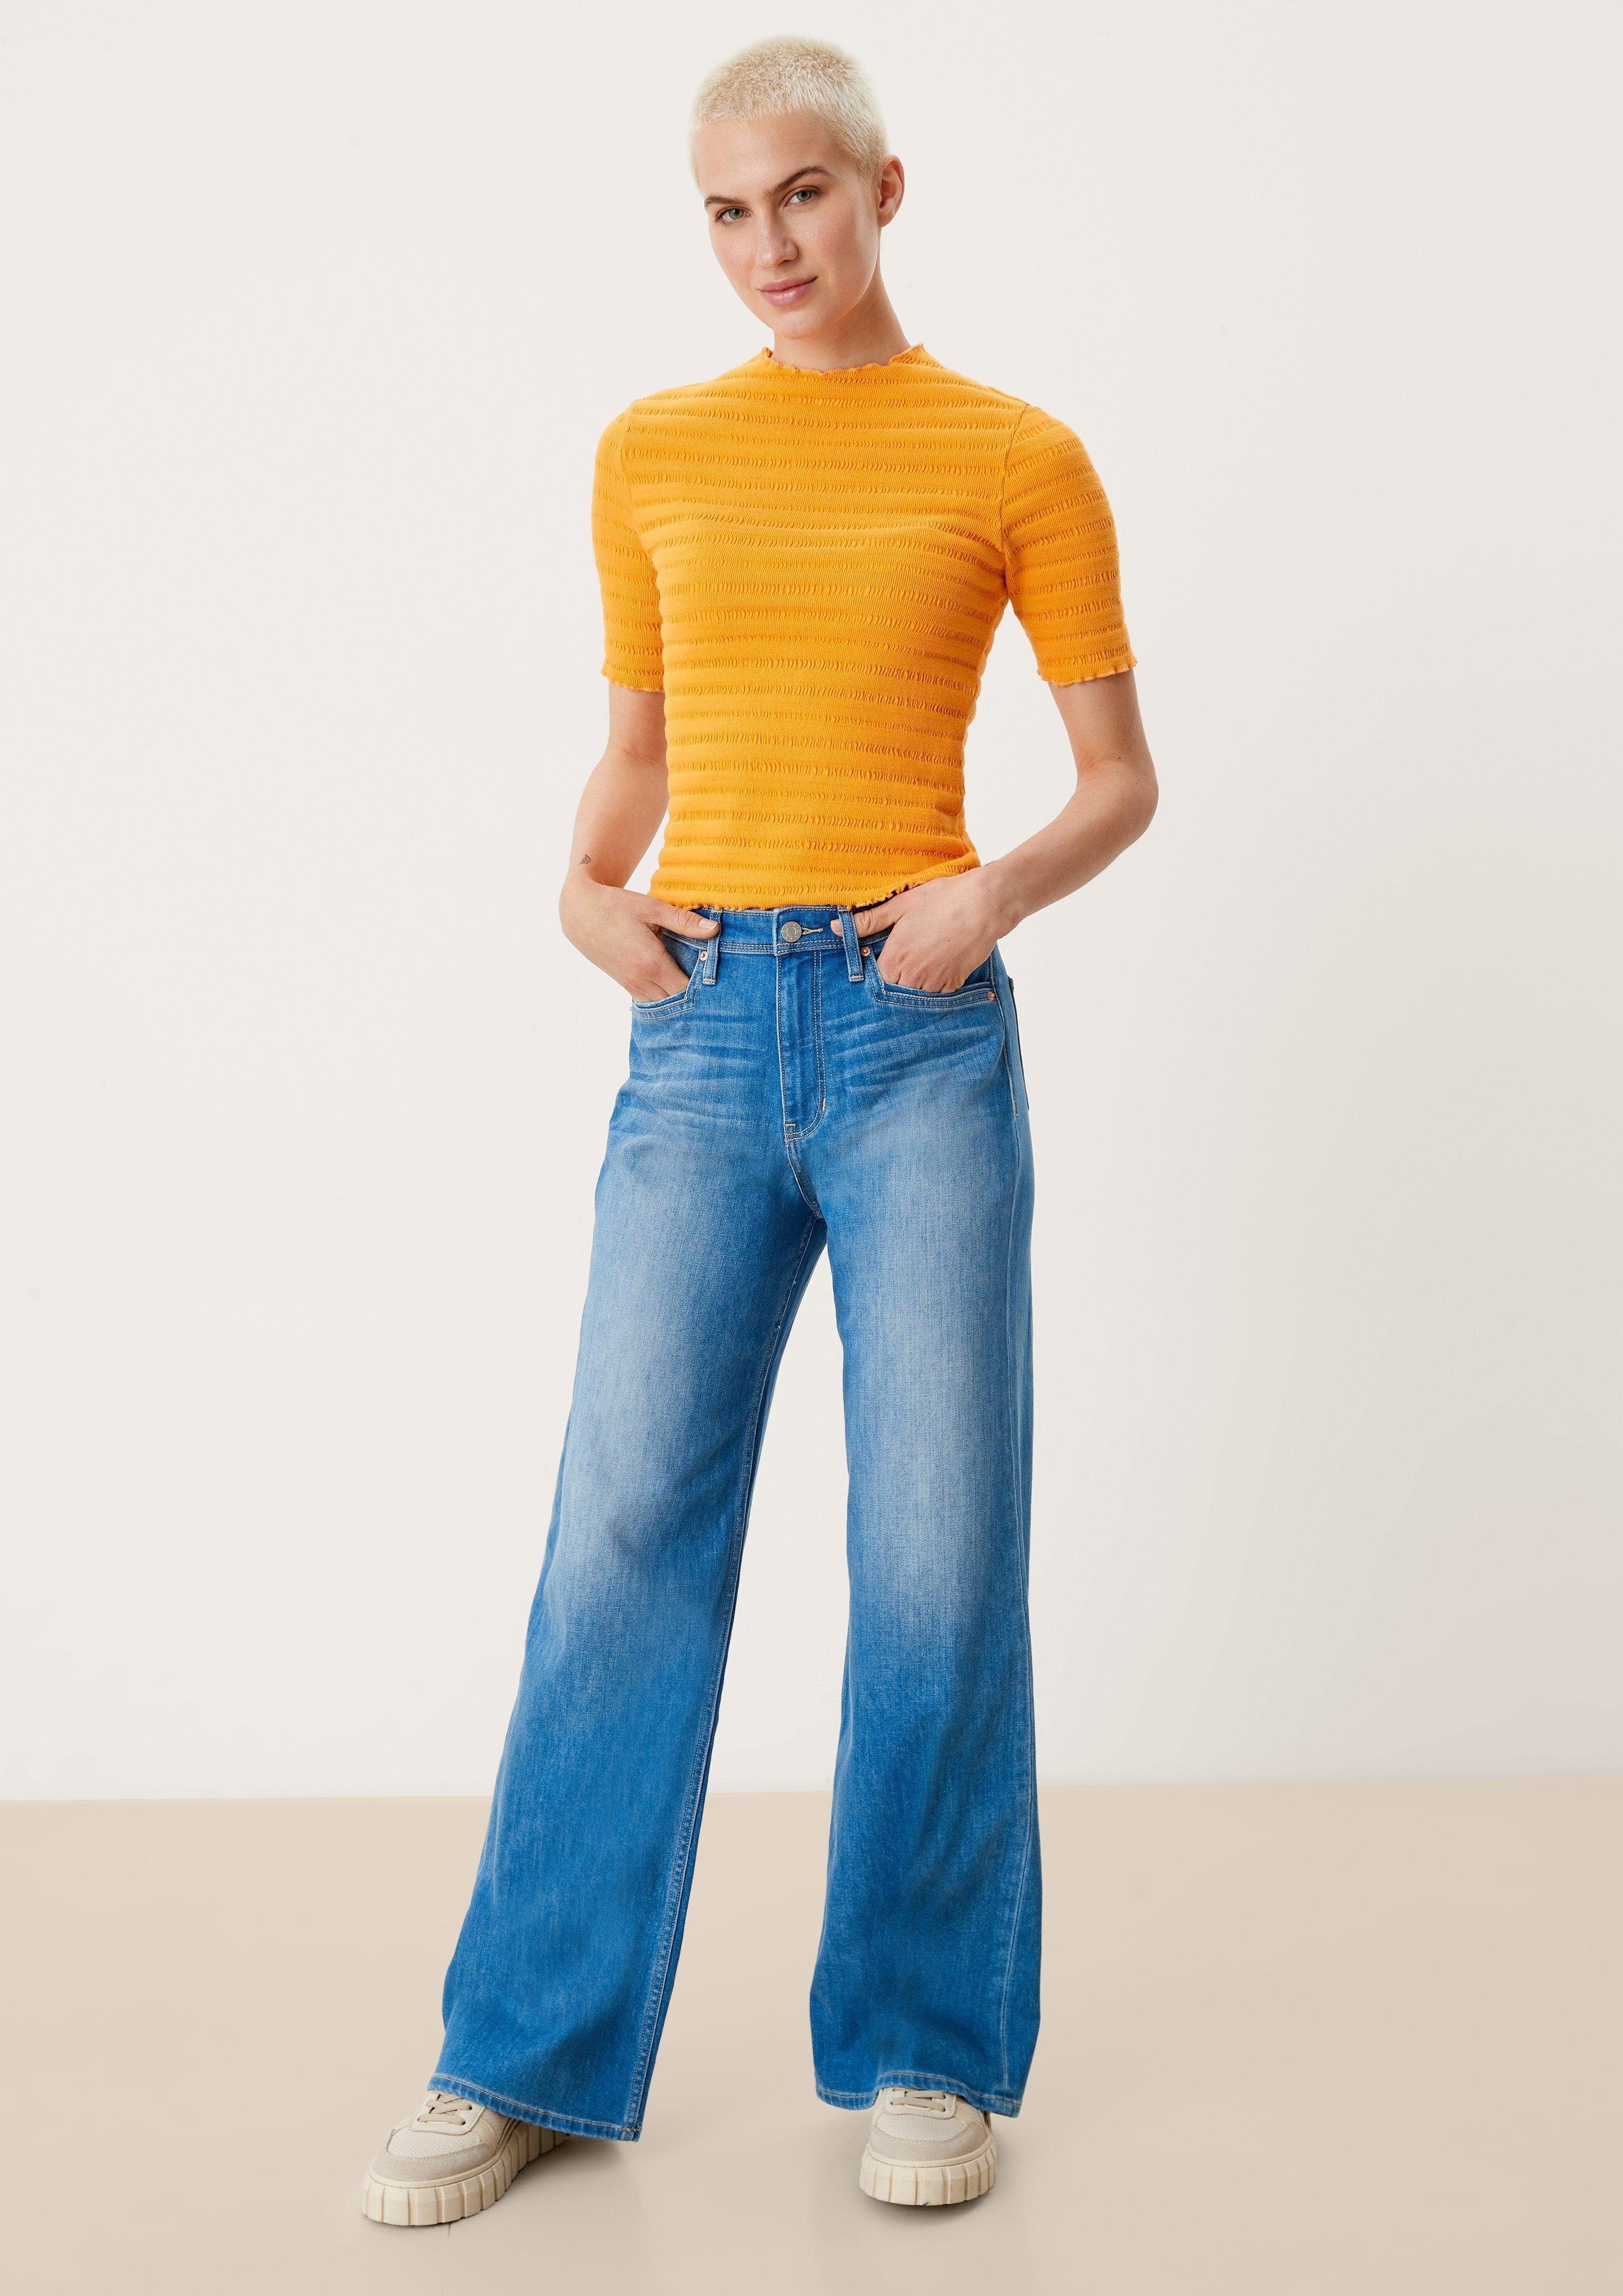 Fit Wide Rise s.Oliver Waschung / / / Leder-Patch, Leg High Regular blue 5-Pocket-Jeans Jeans Suri